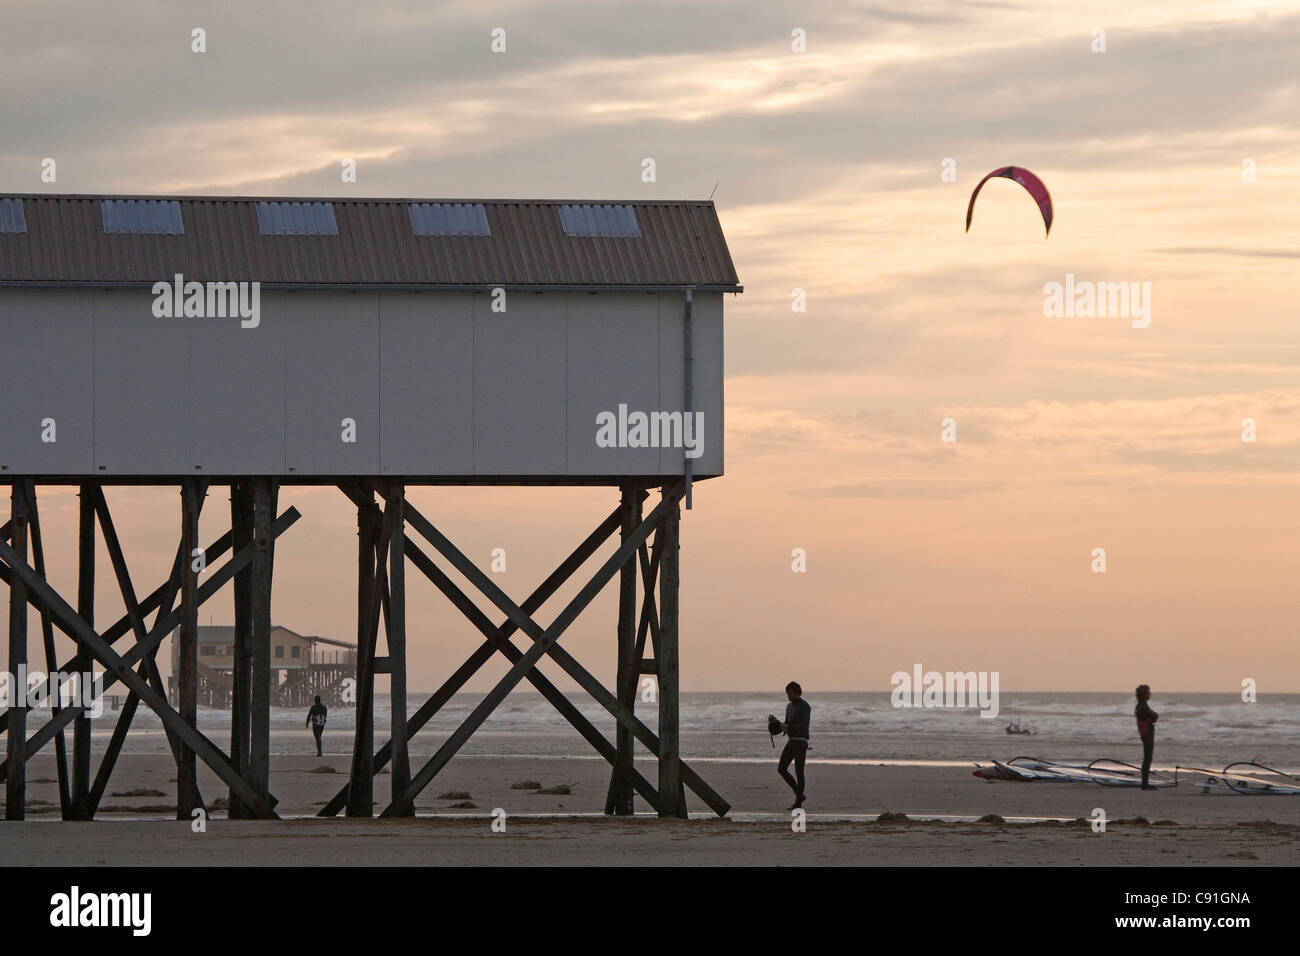 Bâtiments sur pilotis, kite surfer sur la plage de St Peter-Ording, Schleswig-Holstein, côte de la mer du Nord, Allemagne Banque D'Images